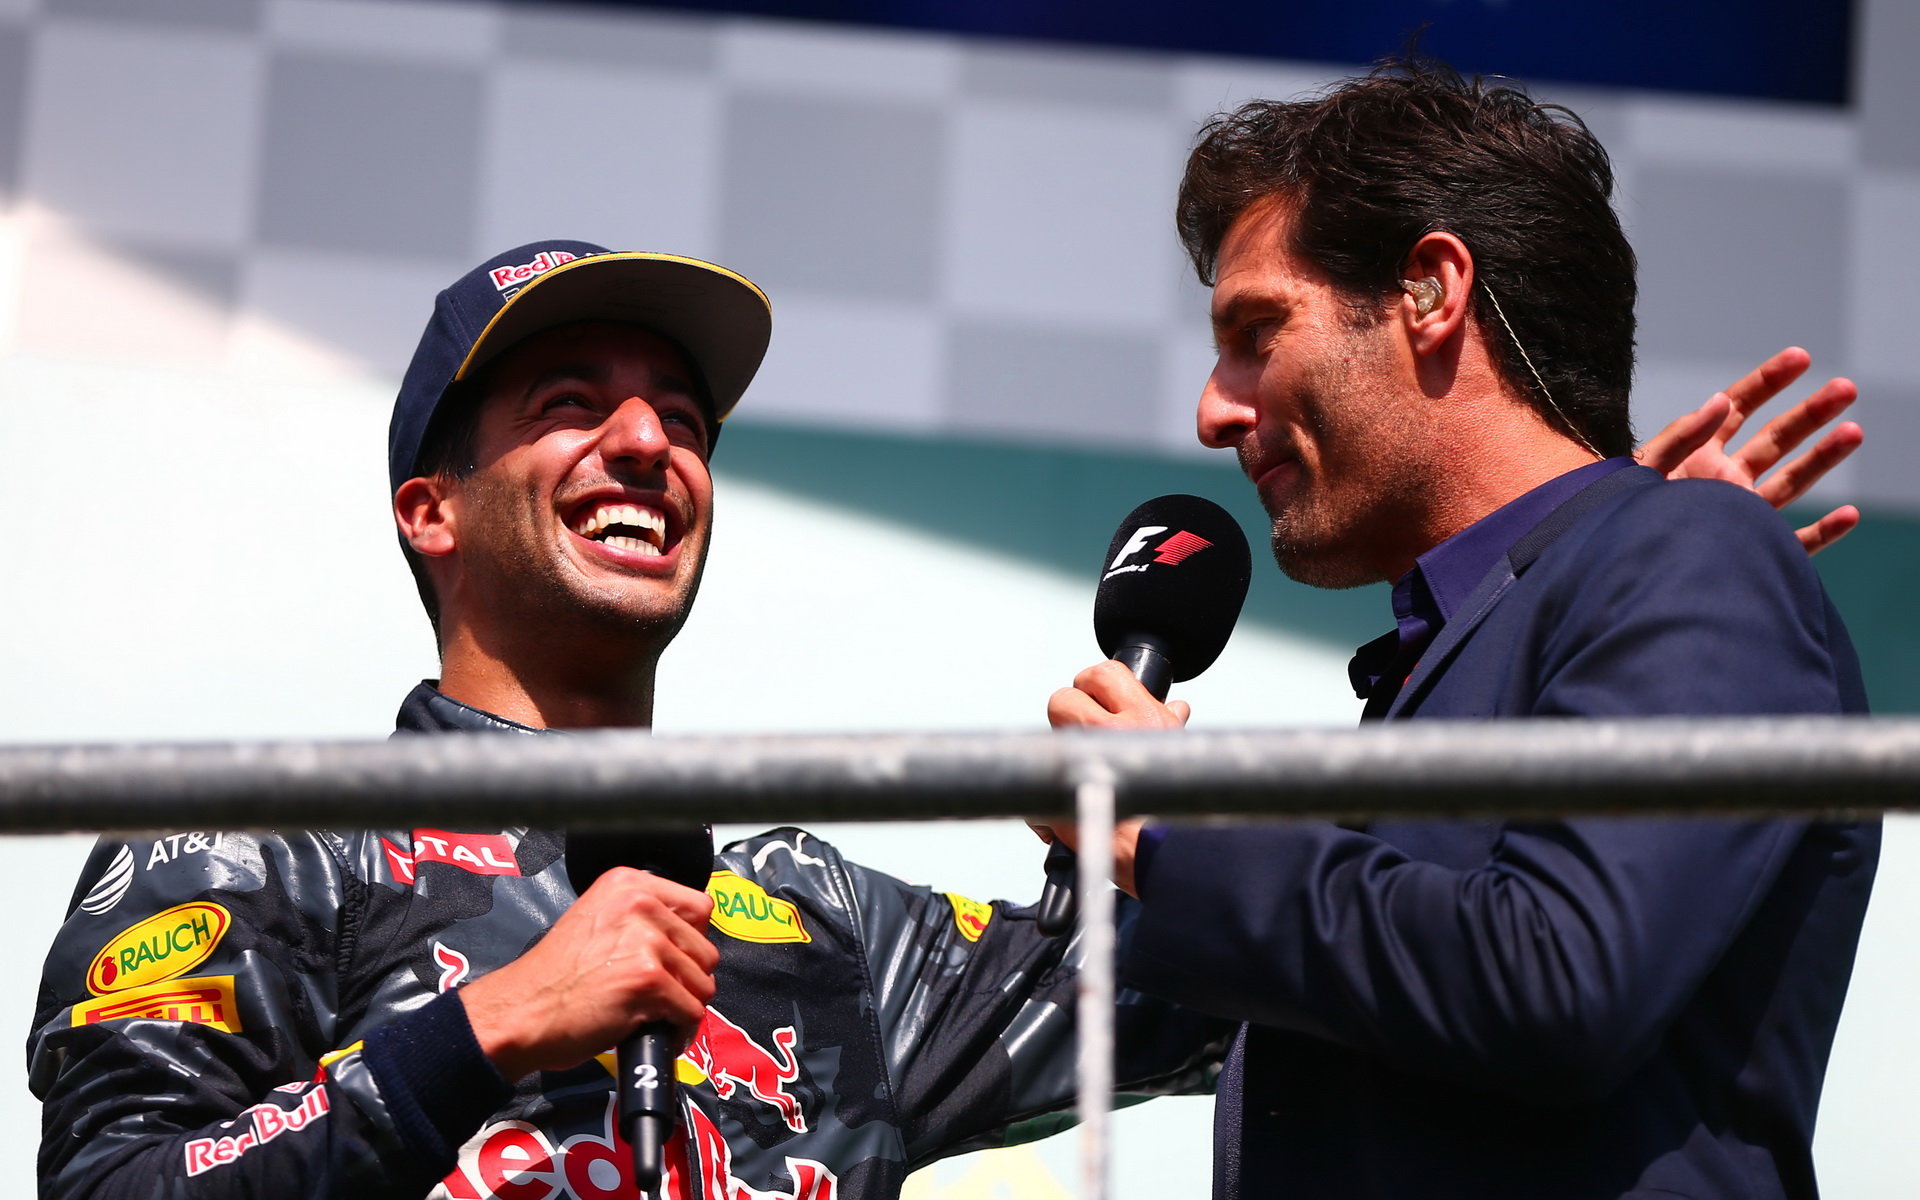 Pro Ricciarda má Webber slova chvály